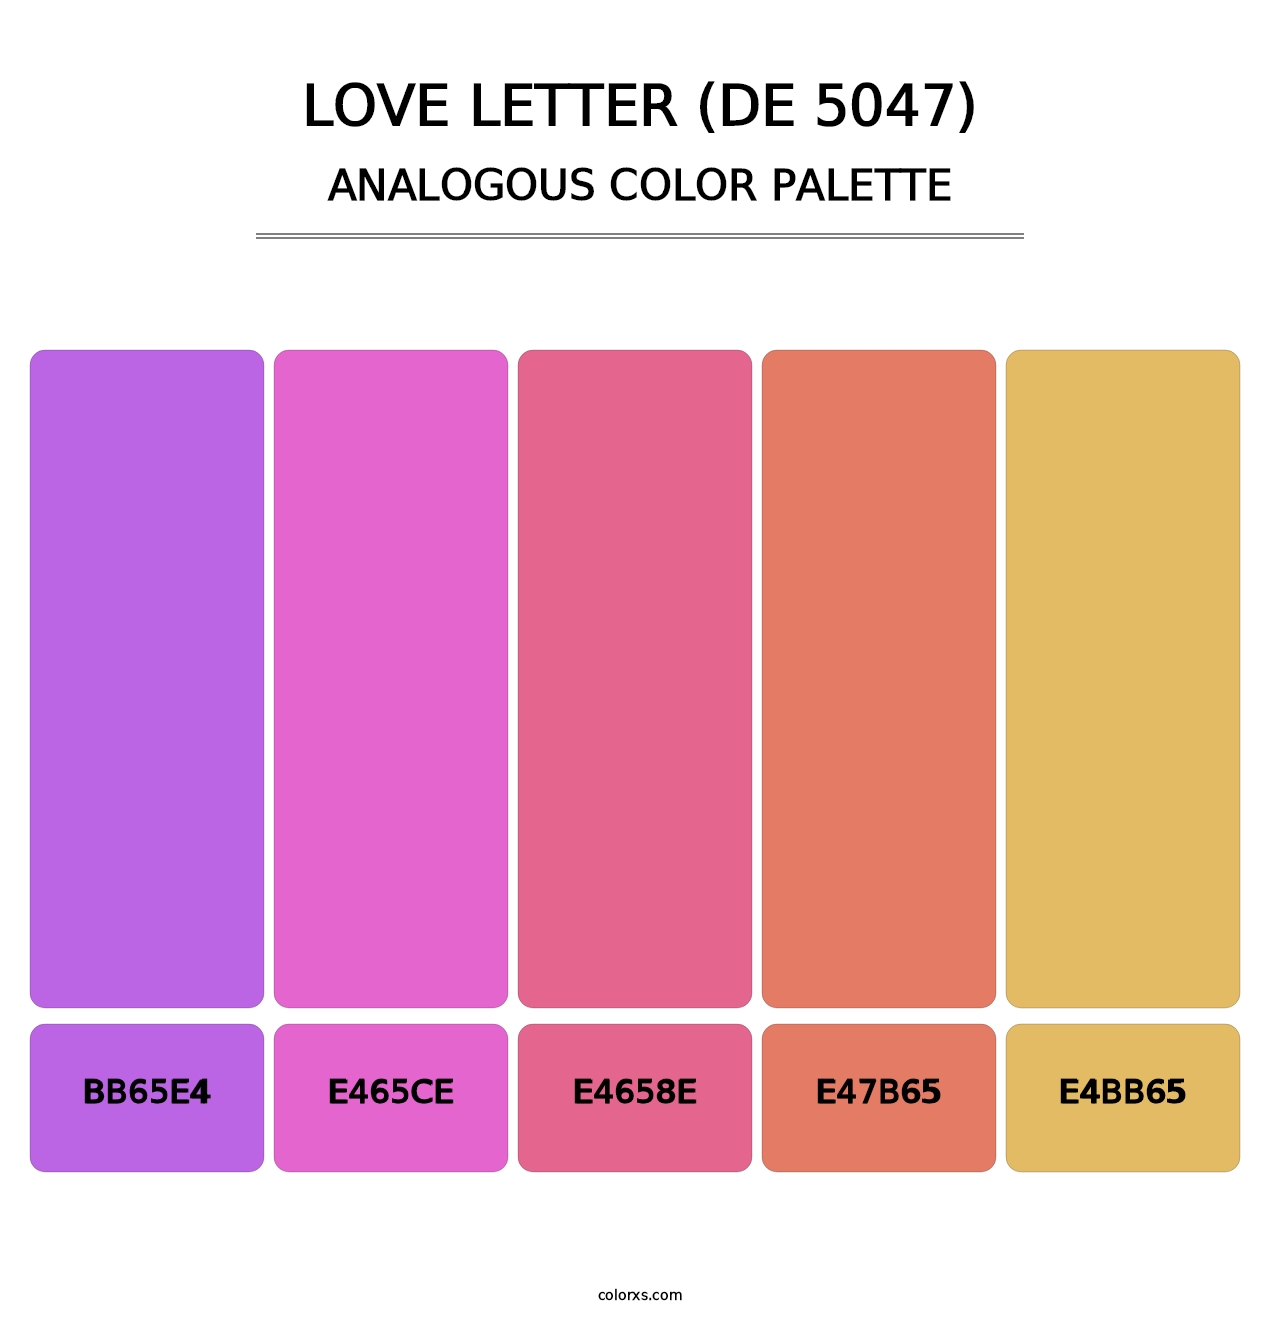 Love Letter (DE 5047) - Analogous Color Palette